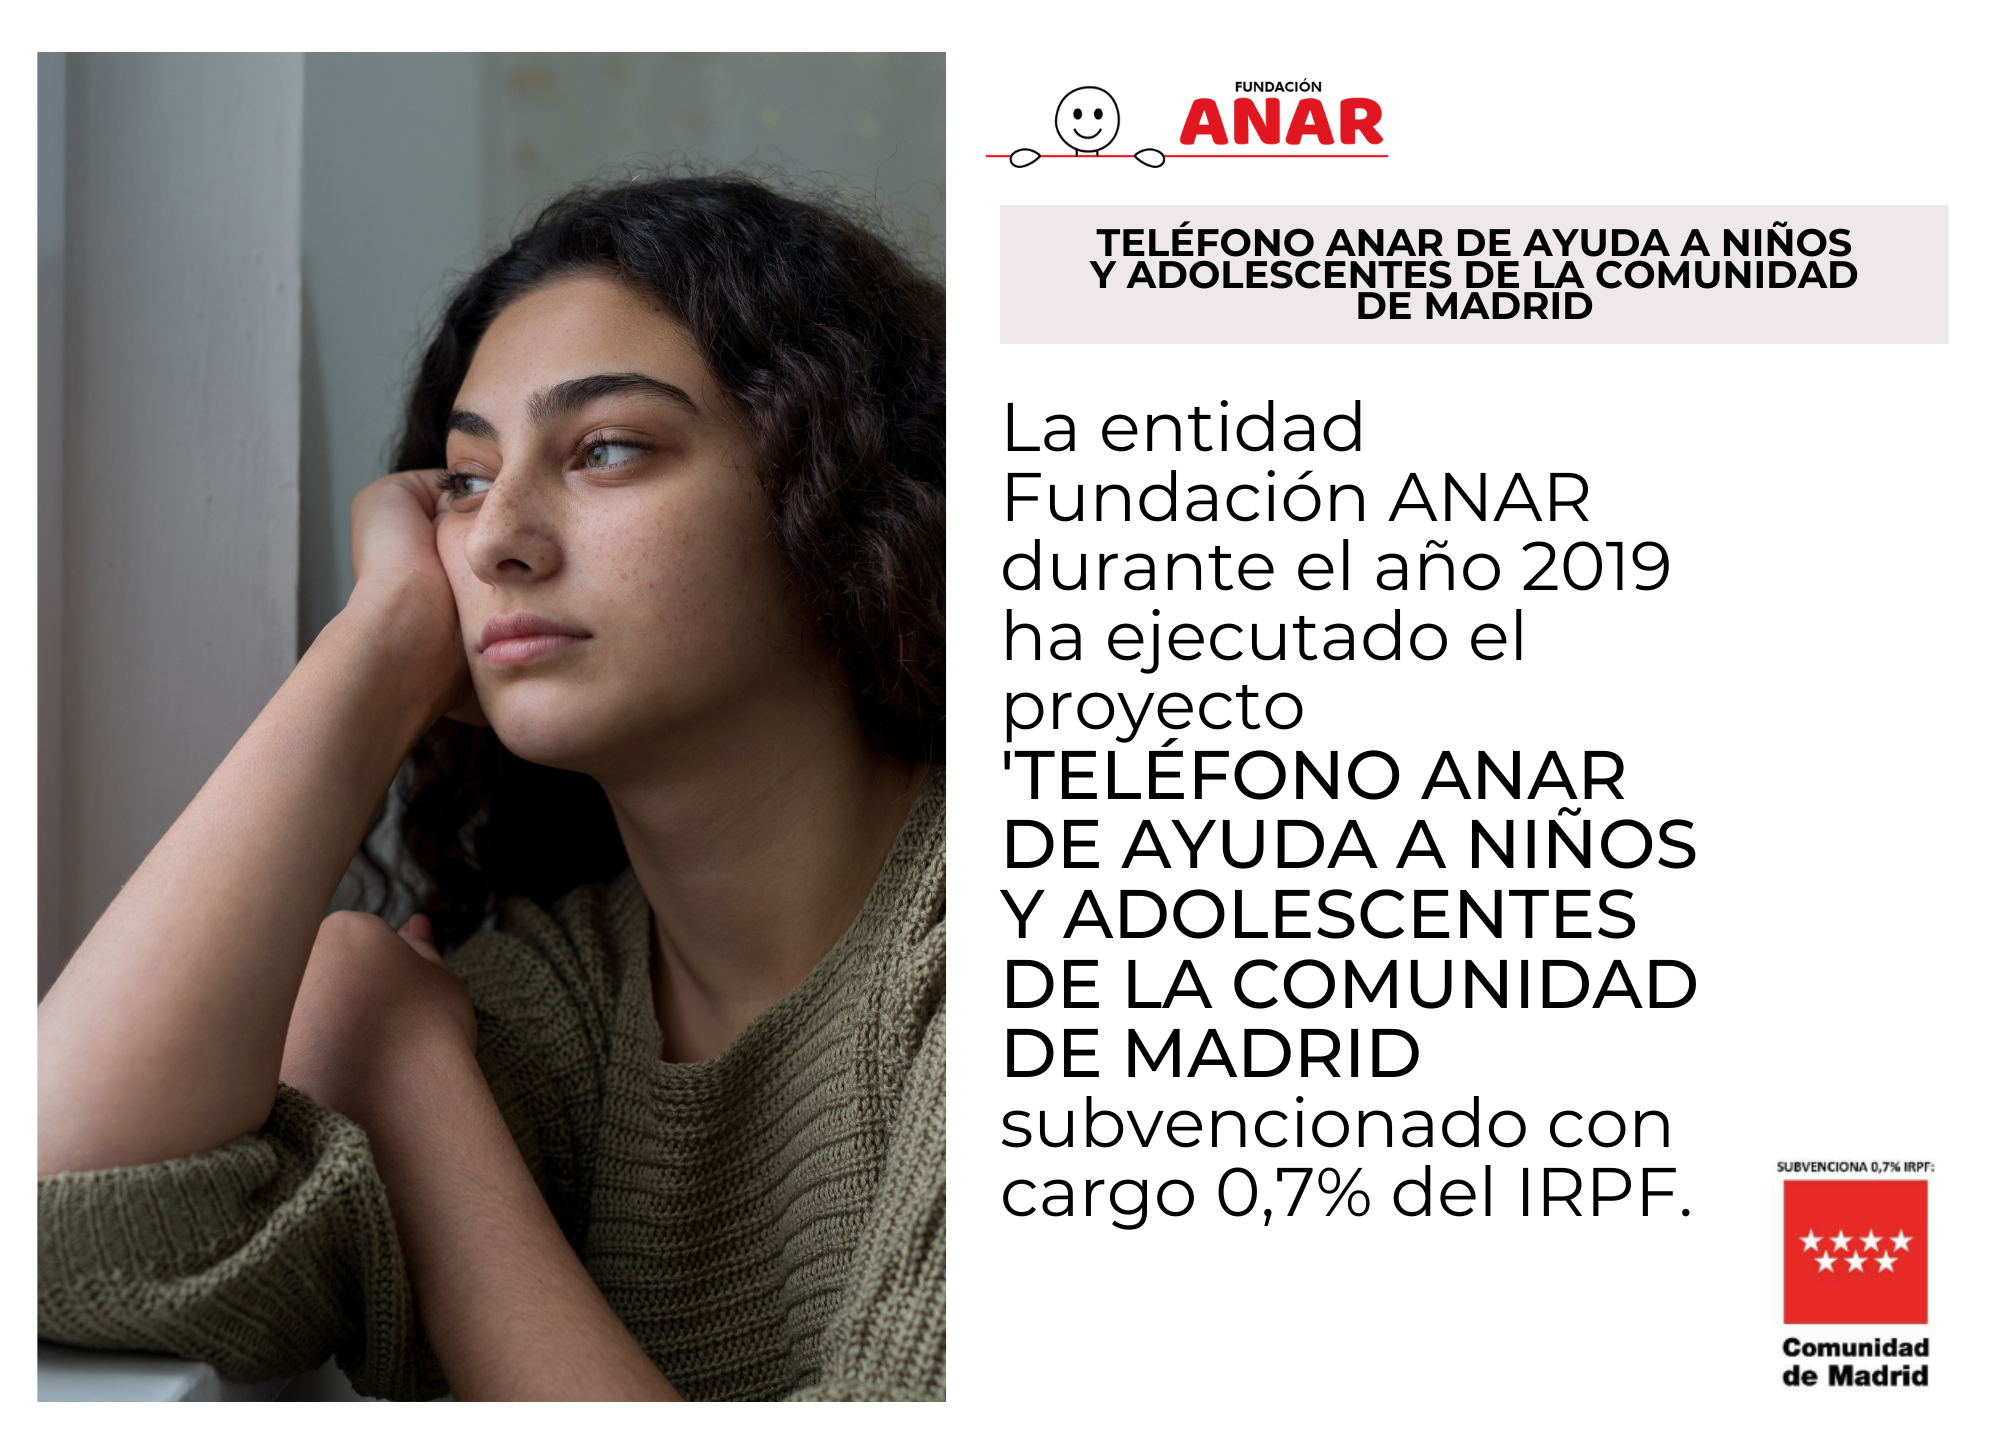 El Teléfono ANAR de Ayuda a Niños y Adolescentes, subvencionado por la Comunidad de Madrid